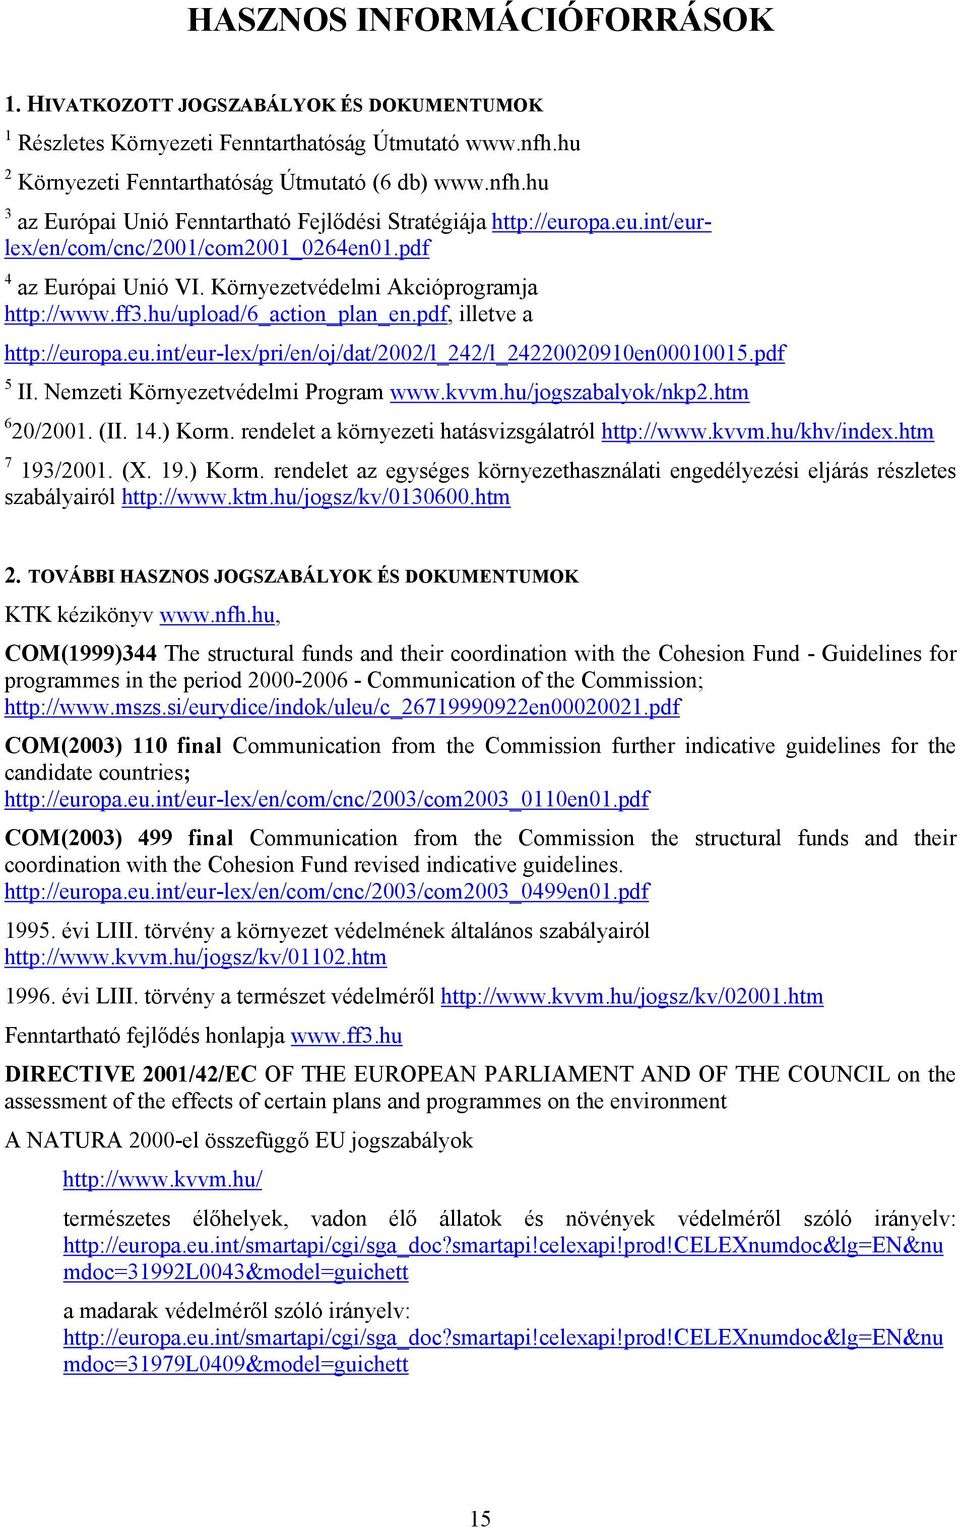 pdf 5 II. Nemzeti Környezetvédelmi Program www.kvvm.hu/jogszabalyok/nkp.htm 6 0/00. (II. 4.) Korm. rendelet a környezeti hatásvizsgálatról http://www.kvvm.hu/khv/index.htm 7 93/00. (X. 9.) Korm. rendelet az egységes környezethasználati engedélyezési eljárás részletes szabályairól http://www.